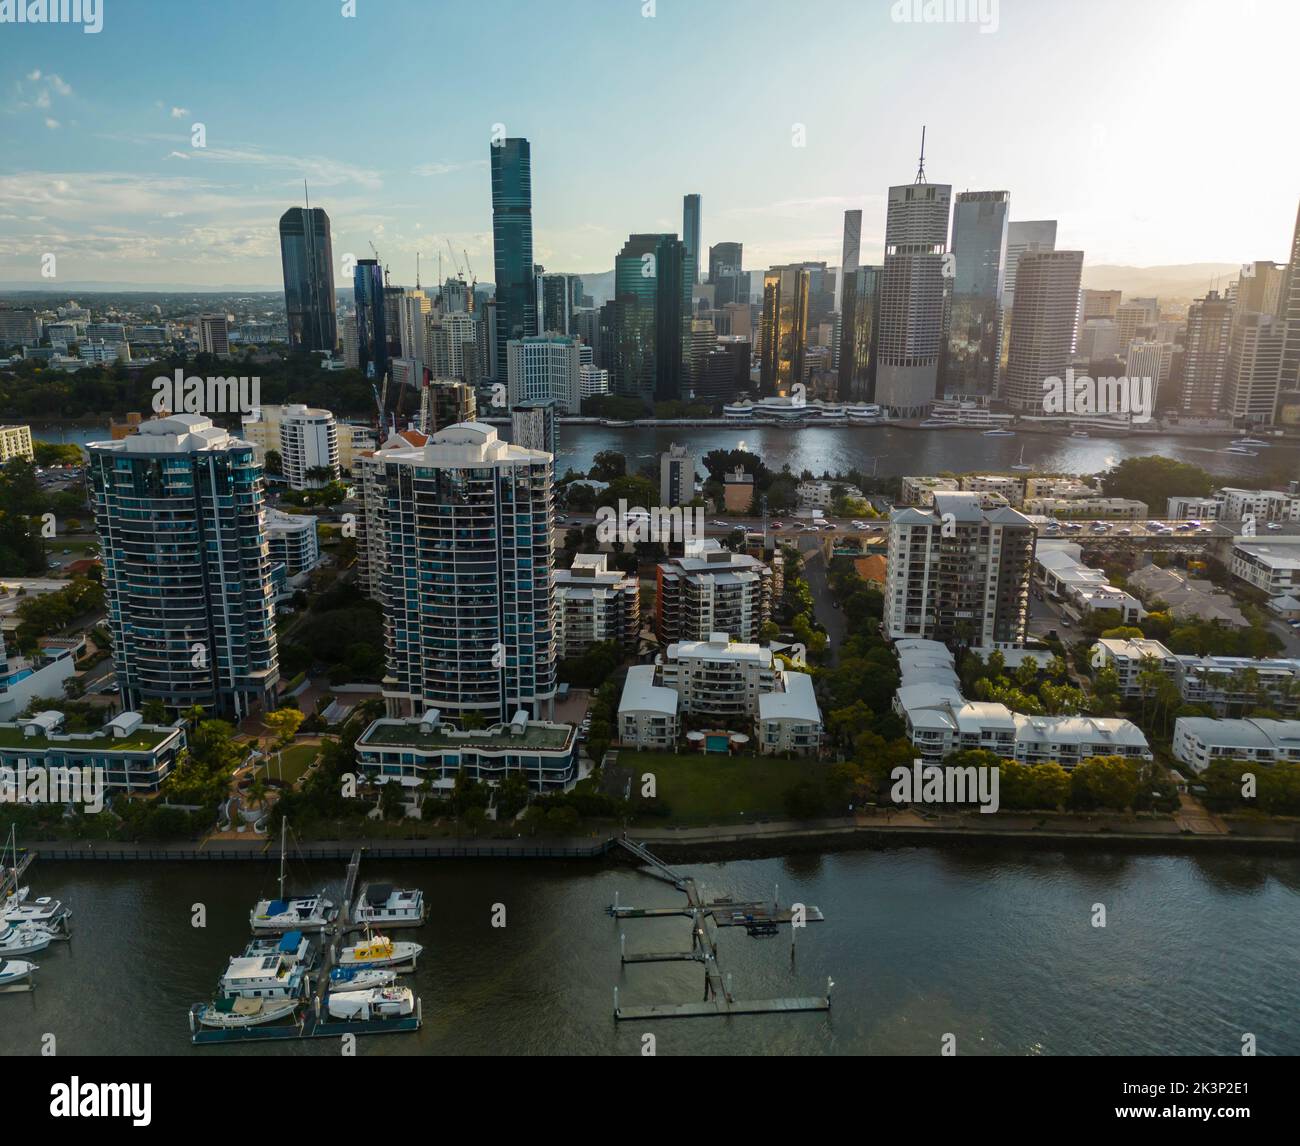 Vue aérienne de l'immeuble d'appartements et du quartier des affaires de Brisbane en Australie Banque D'Images